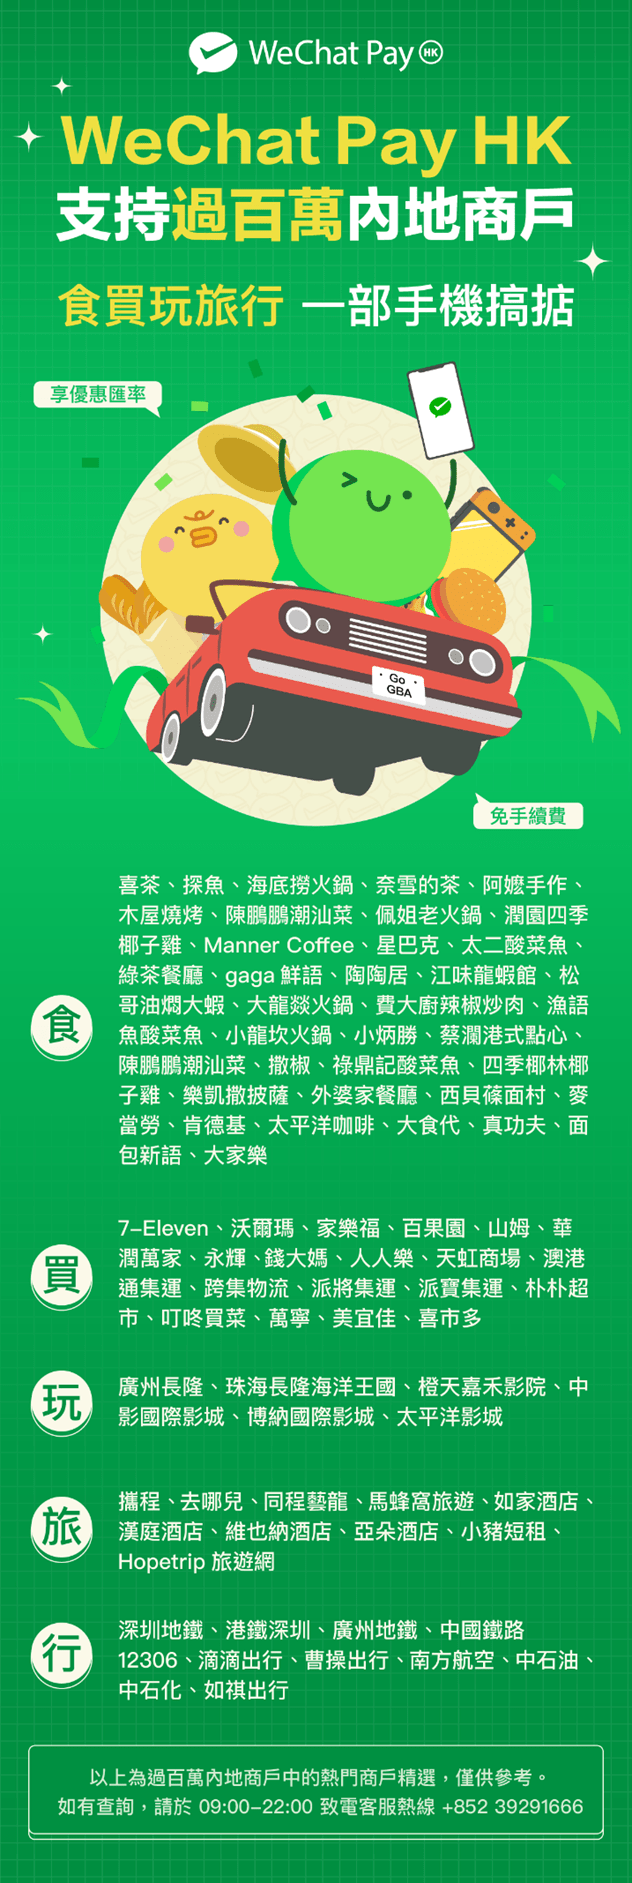 部分内地商戶已支援WeChat Pay HK微信支付，包括多間人氣熱店如喜茶、奈雪的茶、探魚、潤園四季、海底撈火鍋等。用戶亦可透過WeChat Pay HK購買車票或繳付車資，包括深圳地鐵、廣州地鐵、曹操出行、滴滴打車、中國鐵路12306。